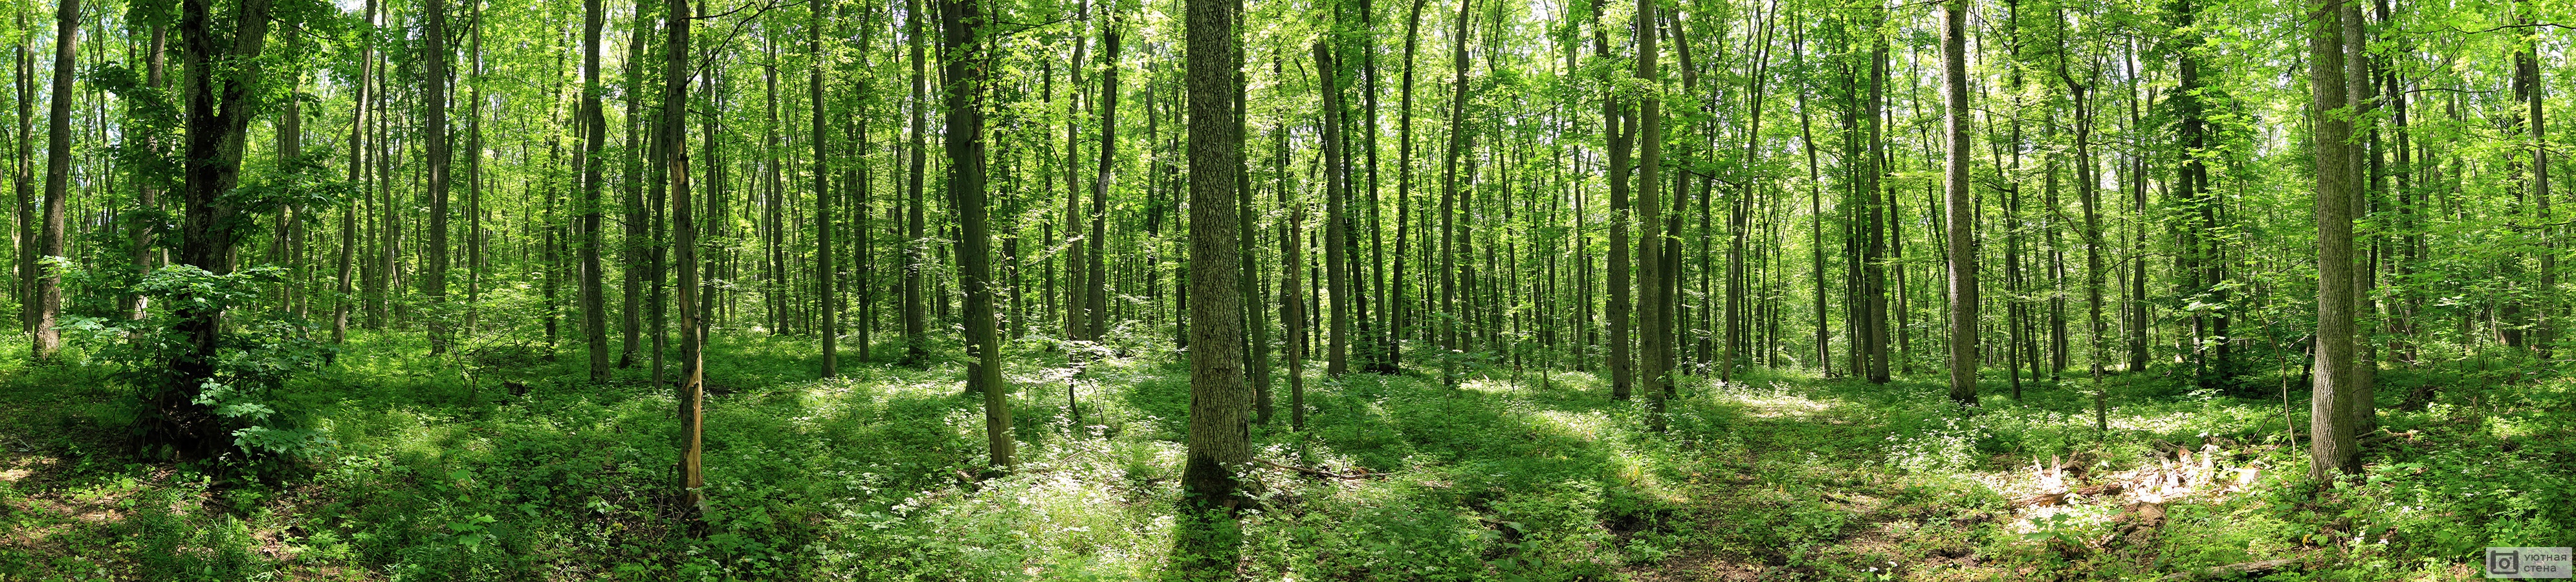 Панорама зеленого лесного пейзажа